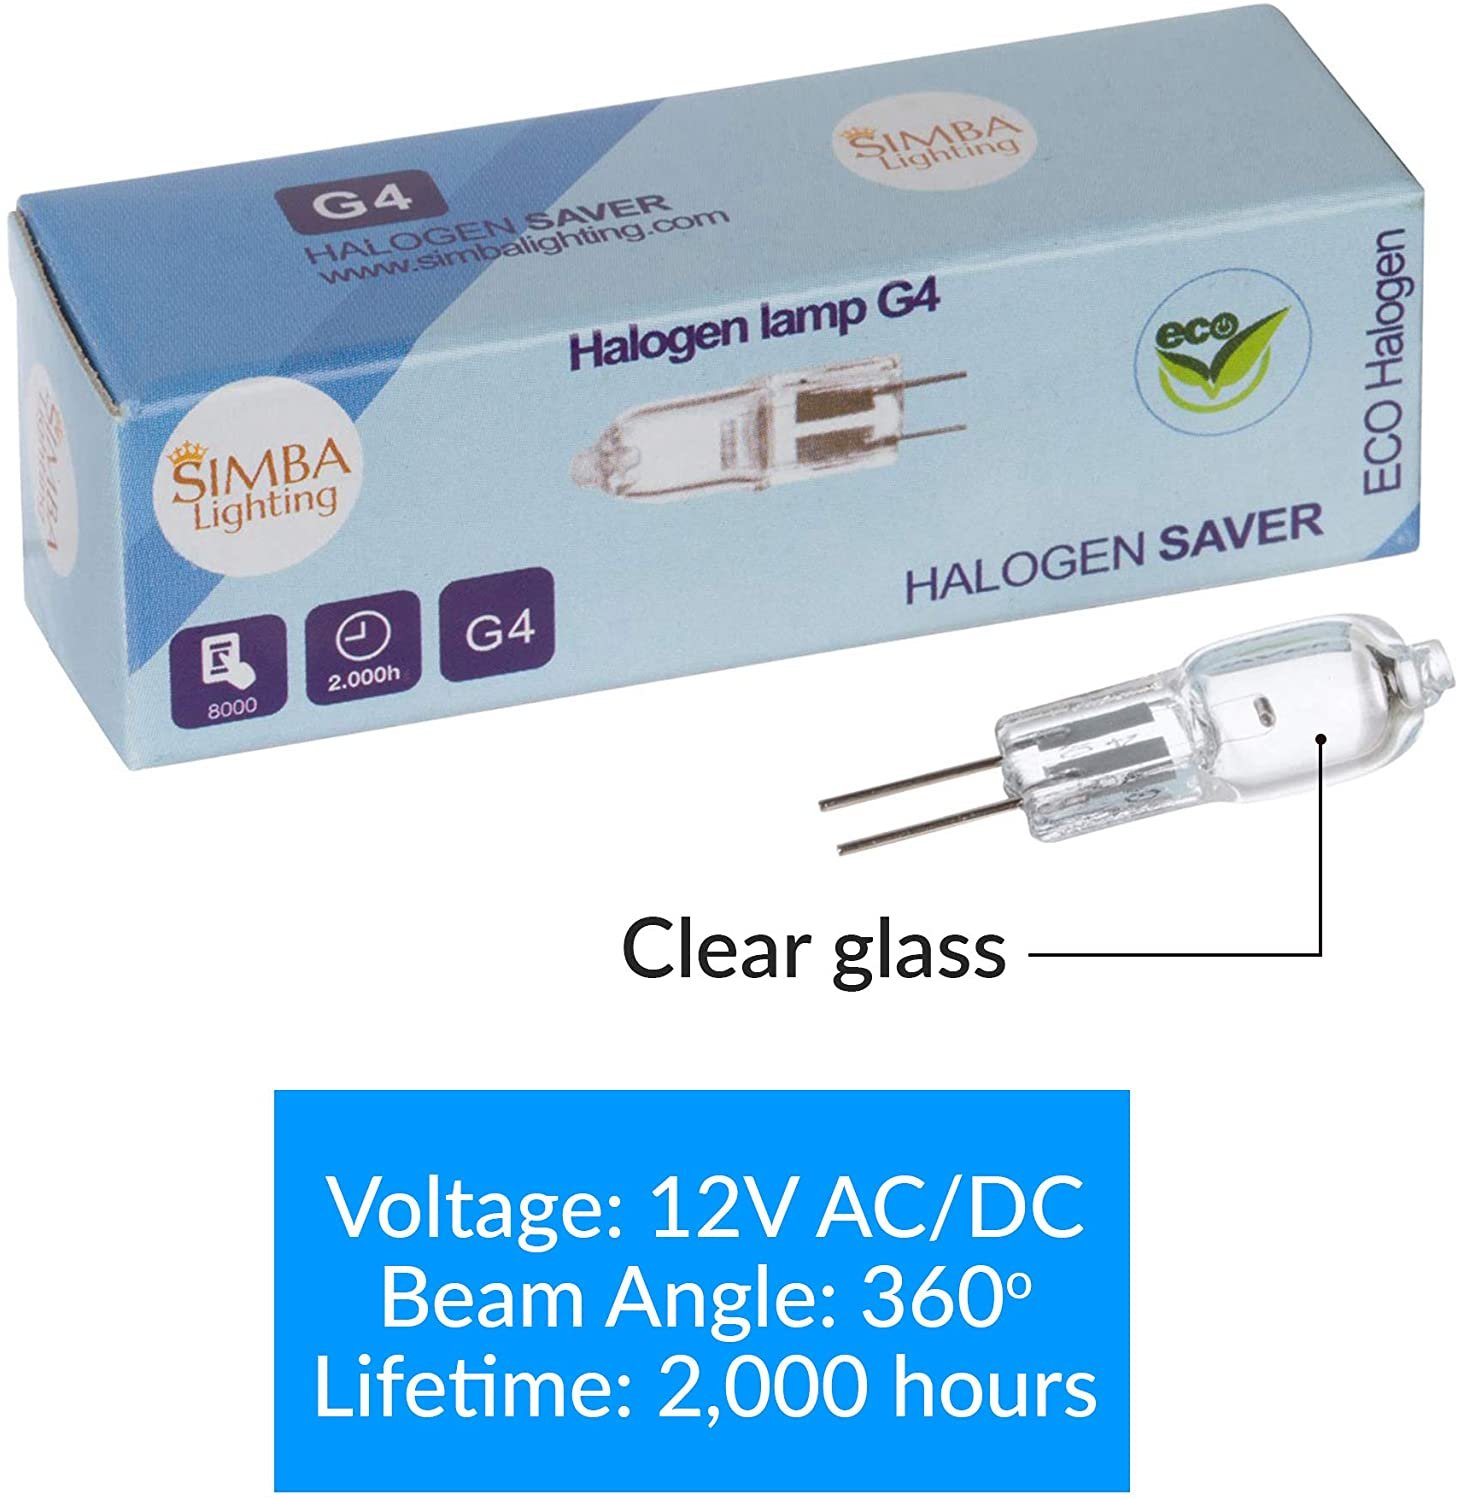 Simba Lighting® Halogen G4 T3 20W 280lm Bi-Pin Bulbs 12V JC 2700K Warm  White,10-Pack